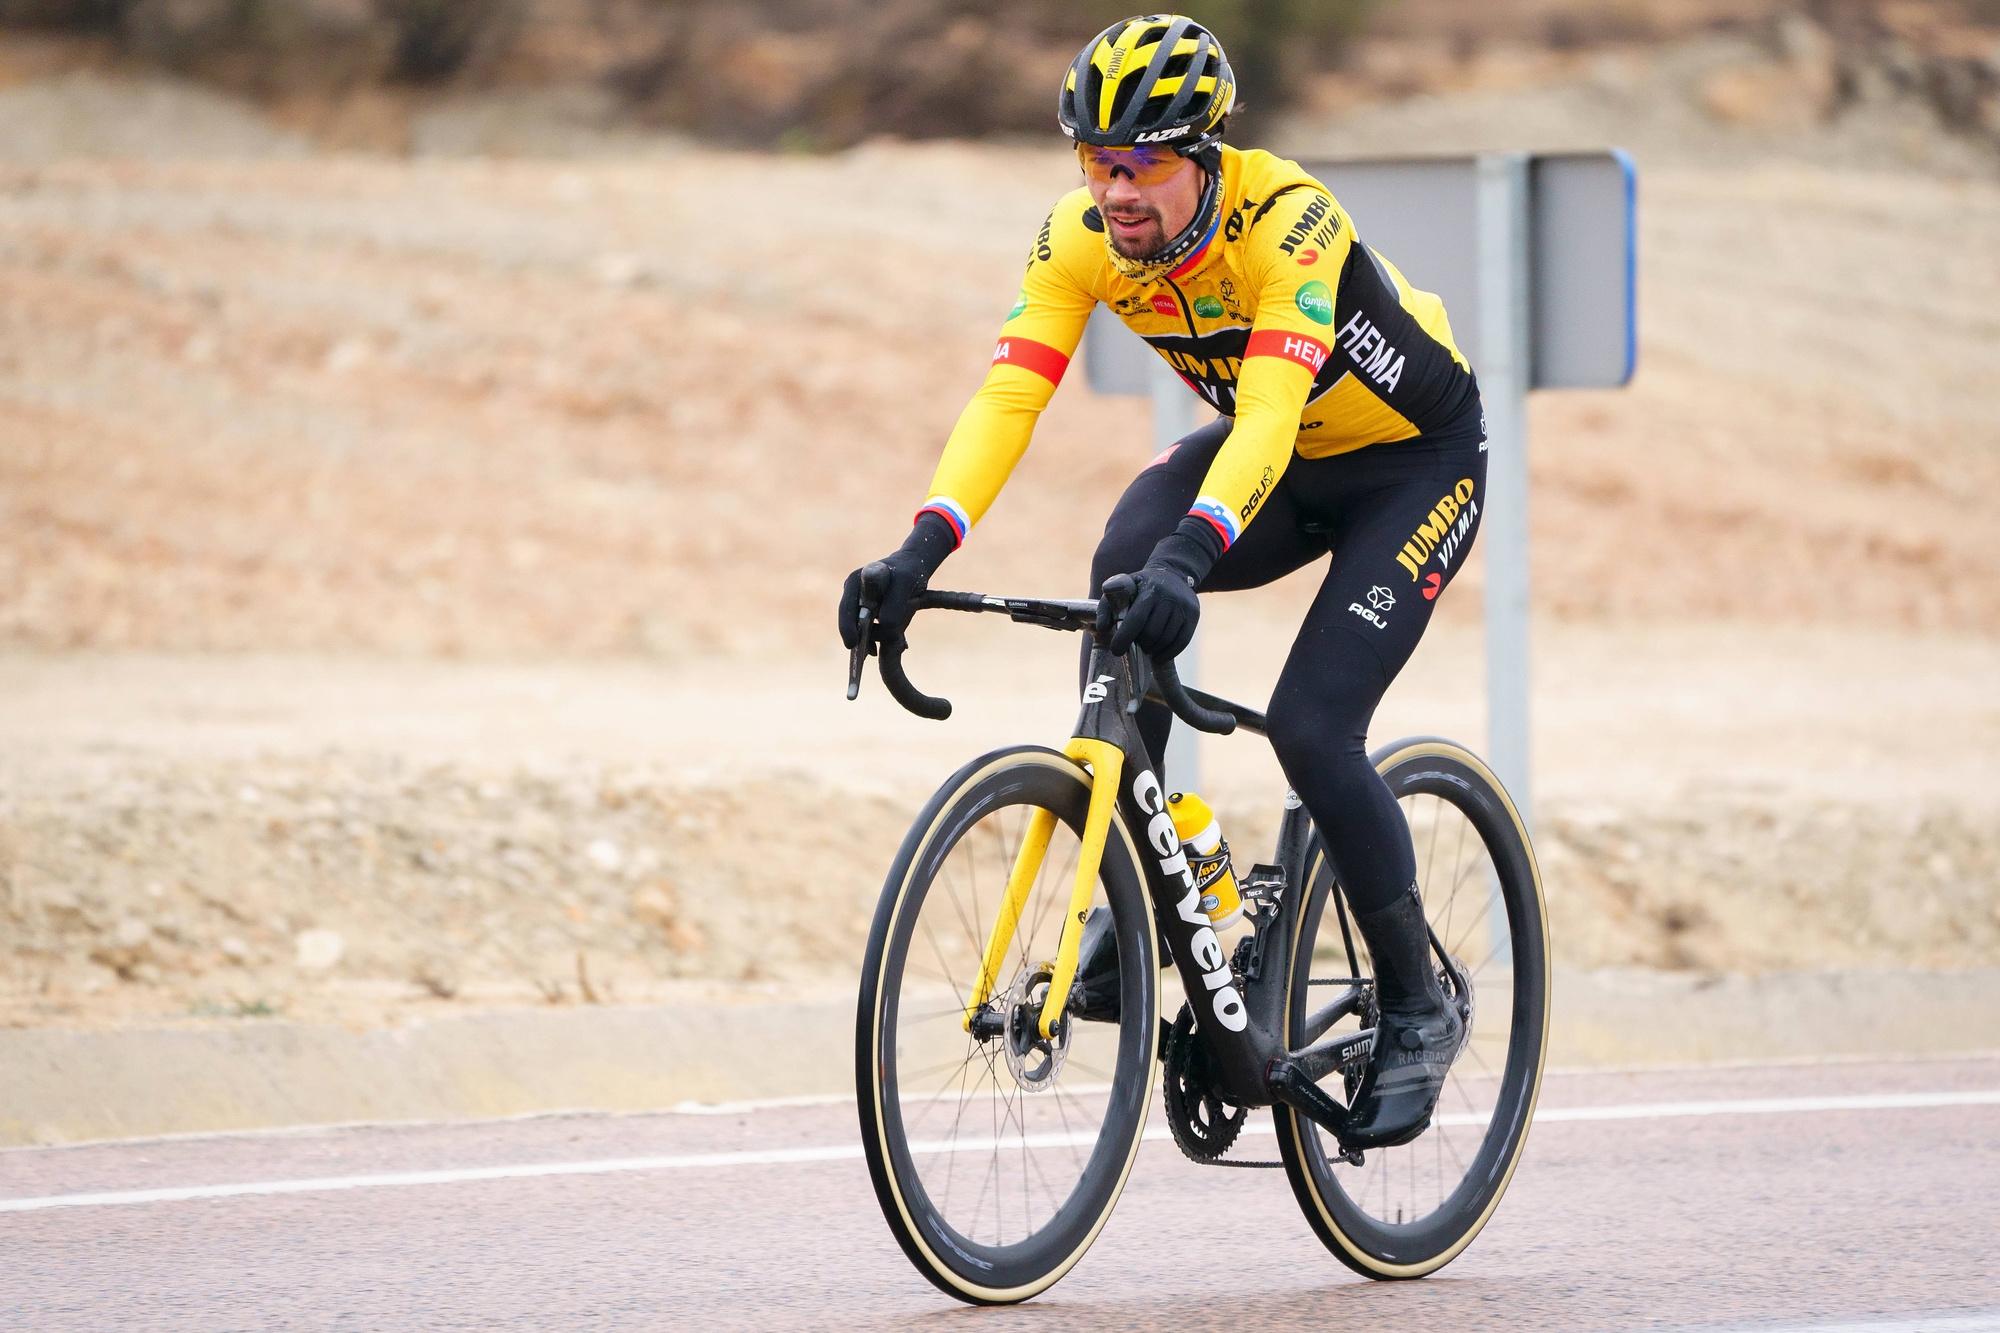 Dépossédé de sa tunique jaune sur l'avant-dernière étape du Tour 2020, contraint à l'abandon l'an dernier, Primoz Roglic espère enfin arriver sur la plus haute marche du podium lors du prochain Tour de France.